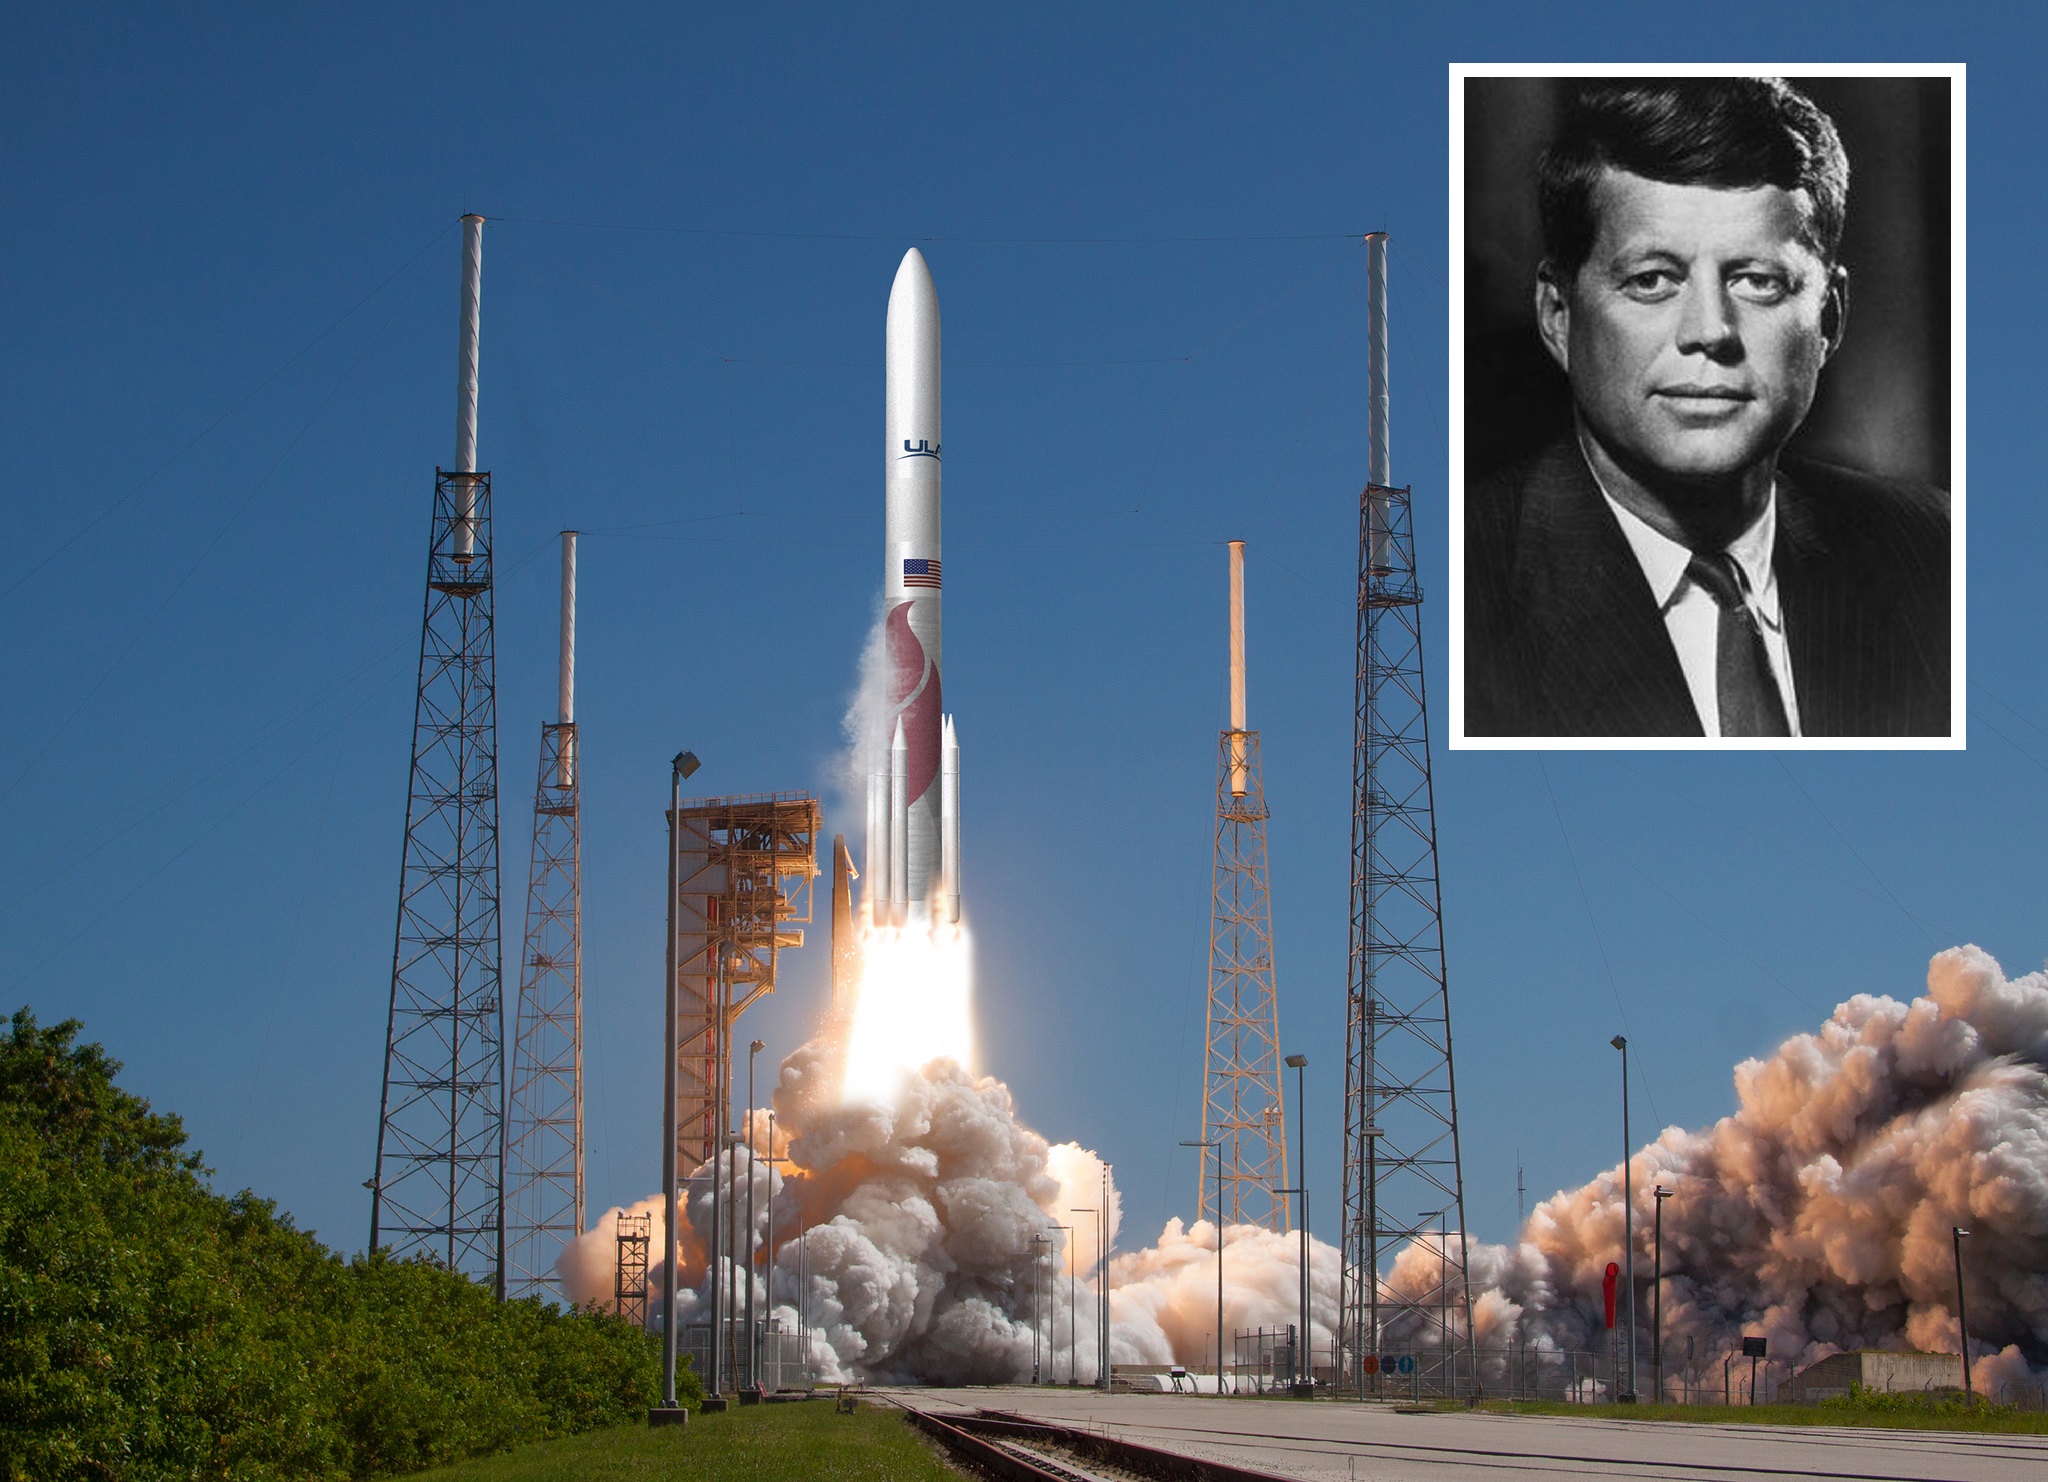 Funérailles présidentielles dans l'espace - Celestis va envoyer l'ADN de Washington, Kennedy, Reagan et Eisenhower dans l'espace